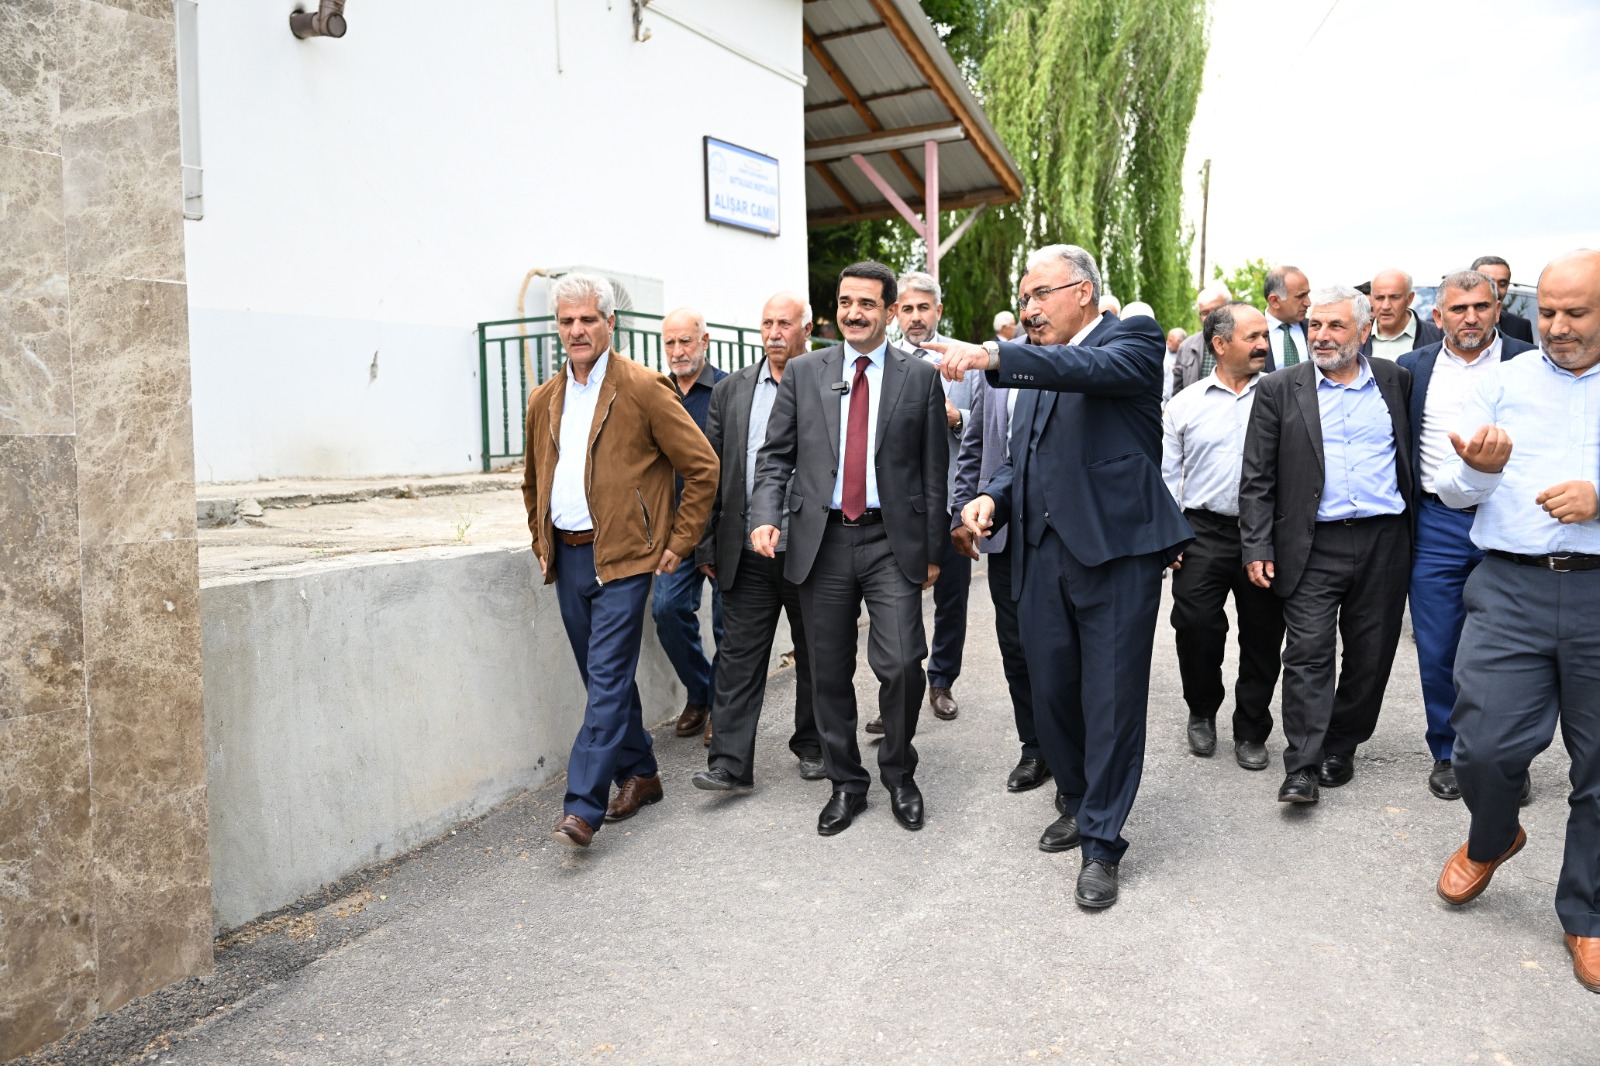 Başkan Taşkın, Alişar Mahallesi sakinleriyle bir araya geldi